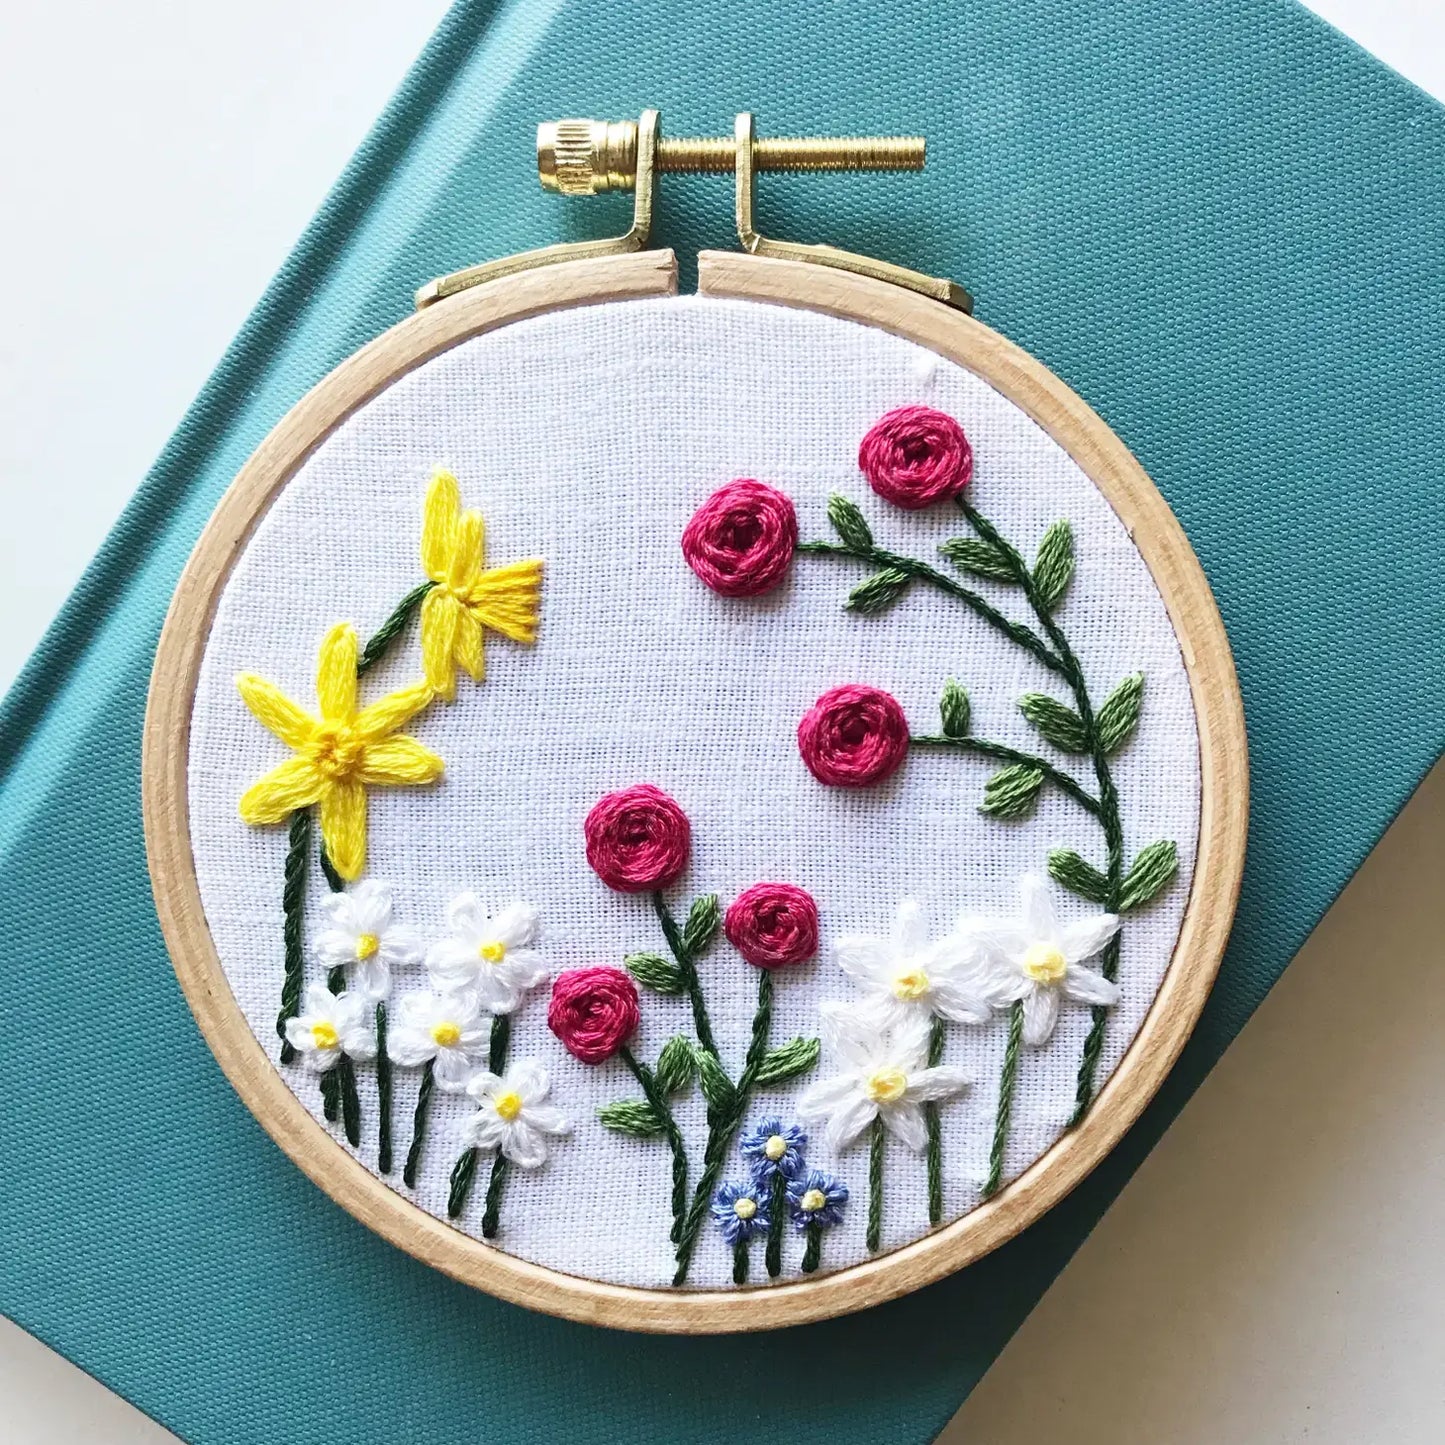 Beginner Embroidery Kit - Family Flower Garden - Alder & Alouette